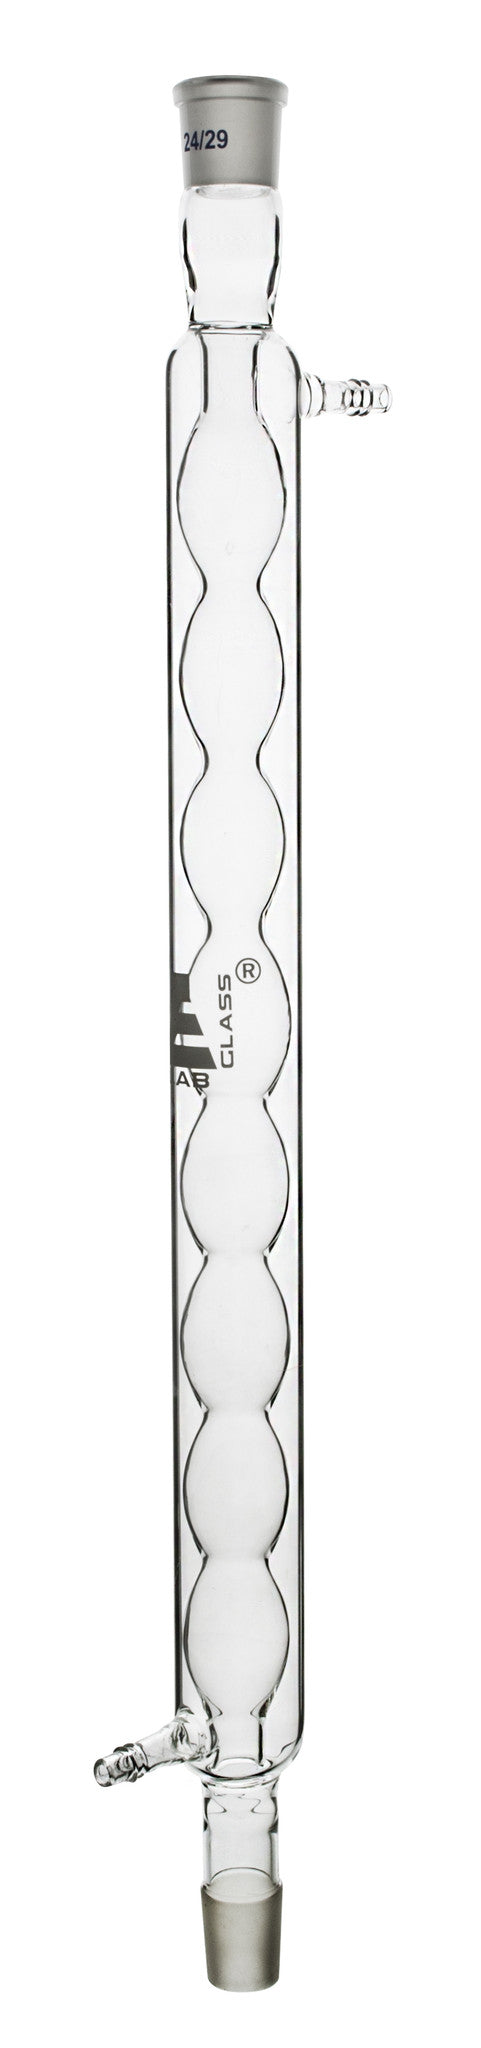 冷凝器- Allihn灯泡，插座尺寸29/32和锥尺寸29/32，有效长度40mm